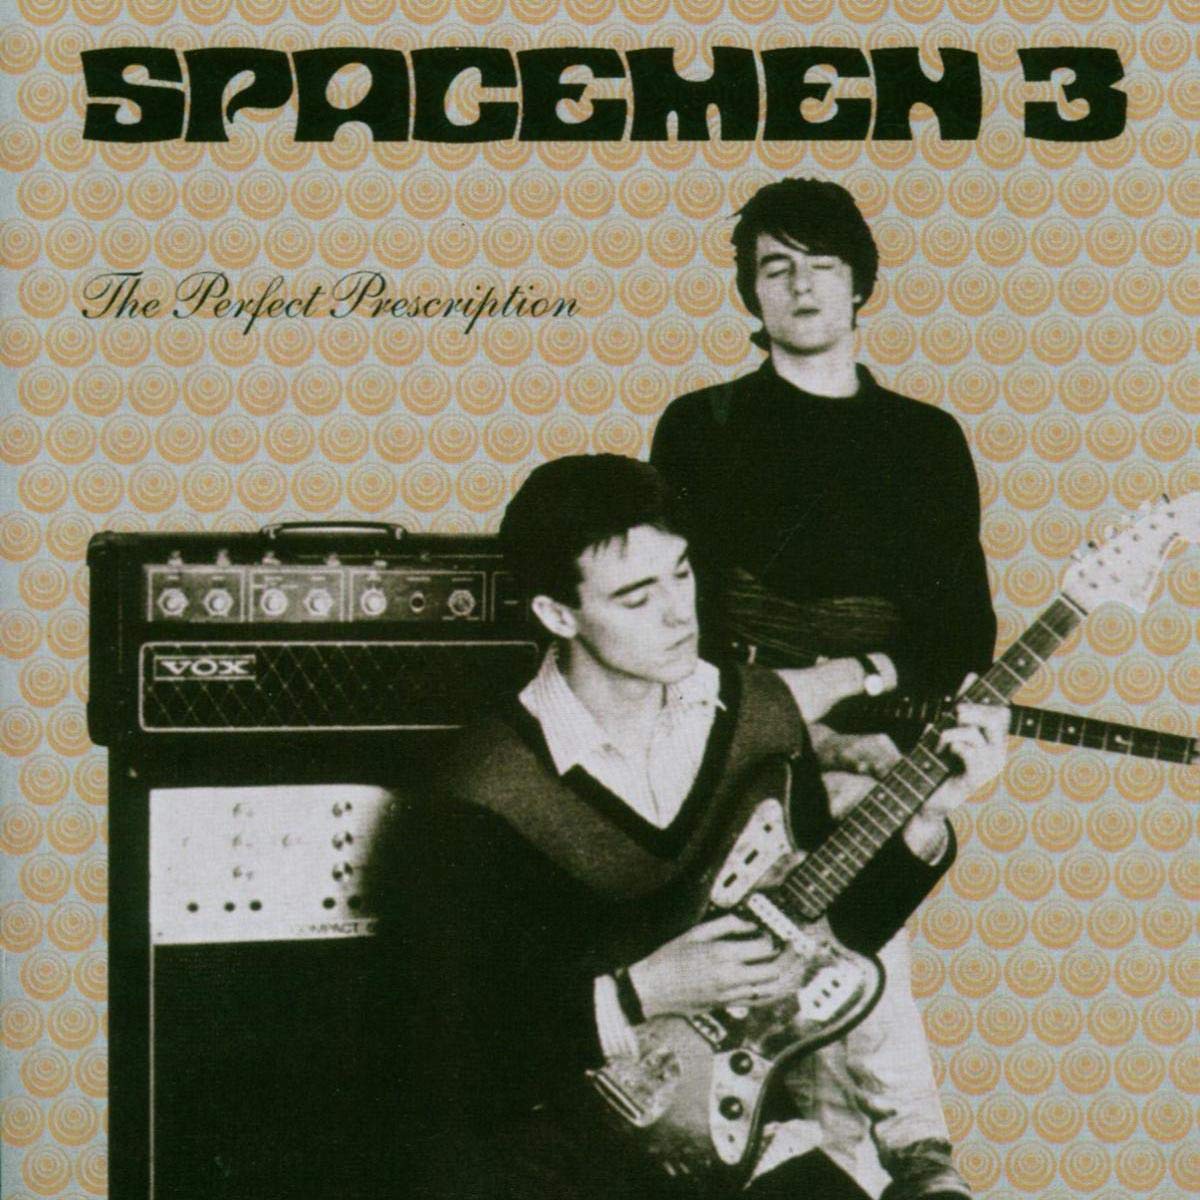 Spacemen 3 "The Perfect Prescription" LP